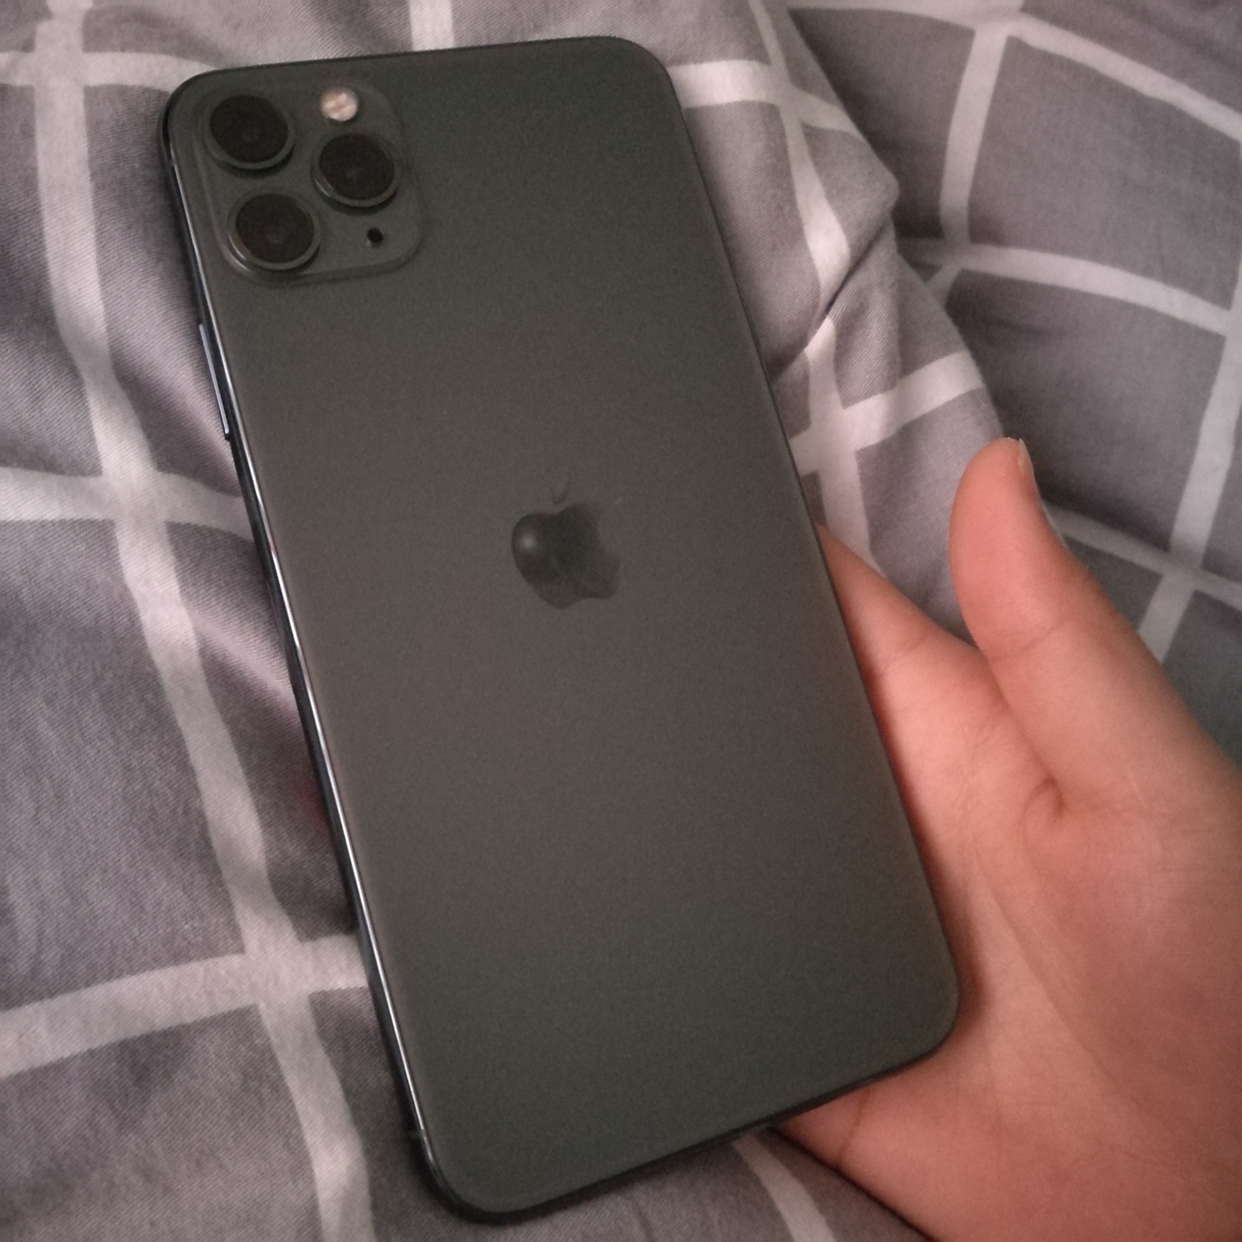 【裸机】 apple/苹果 iphone11 pro 256gb 绿色 美版有锁 移动联通